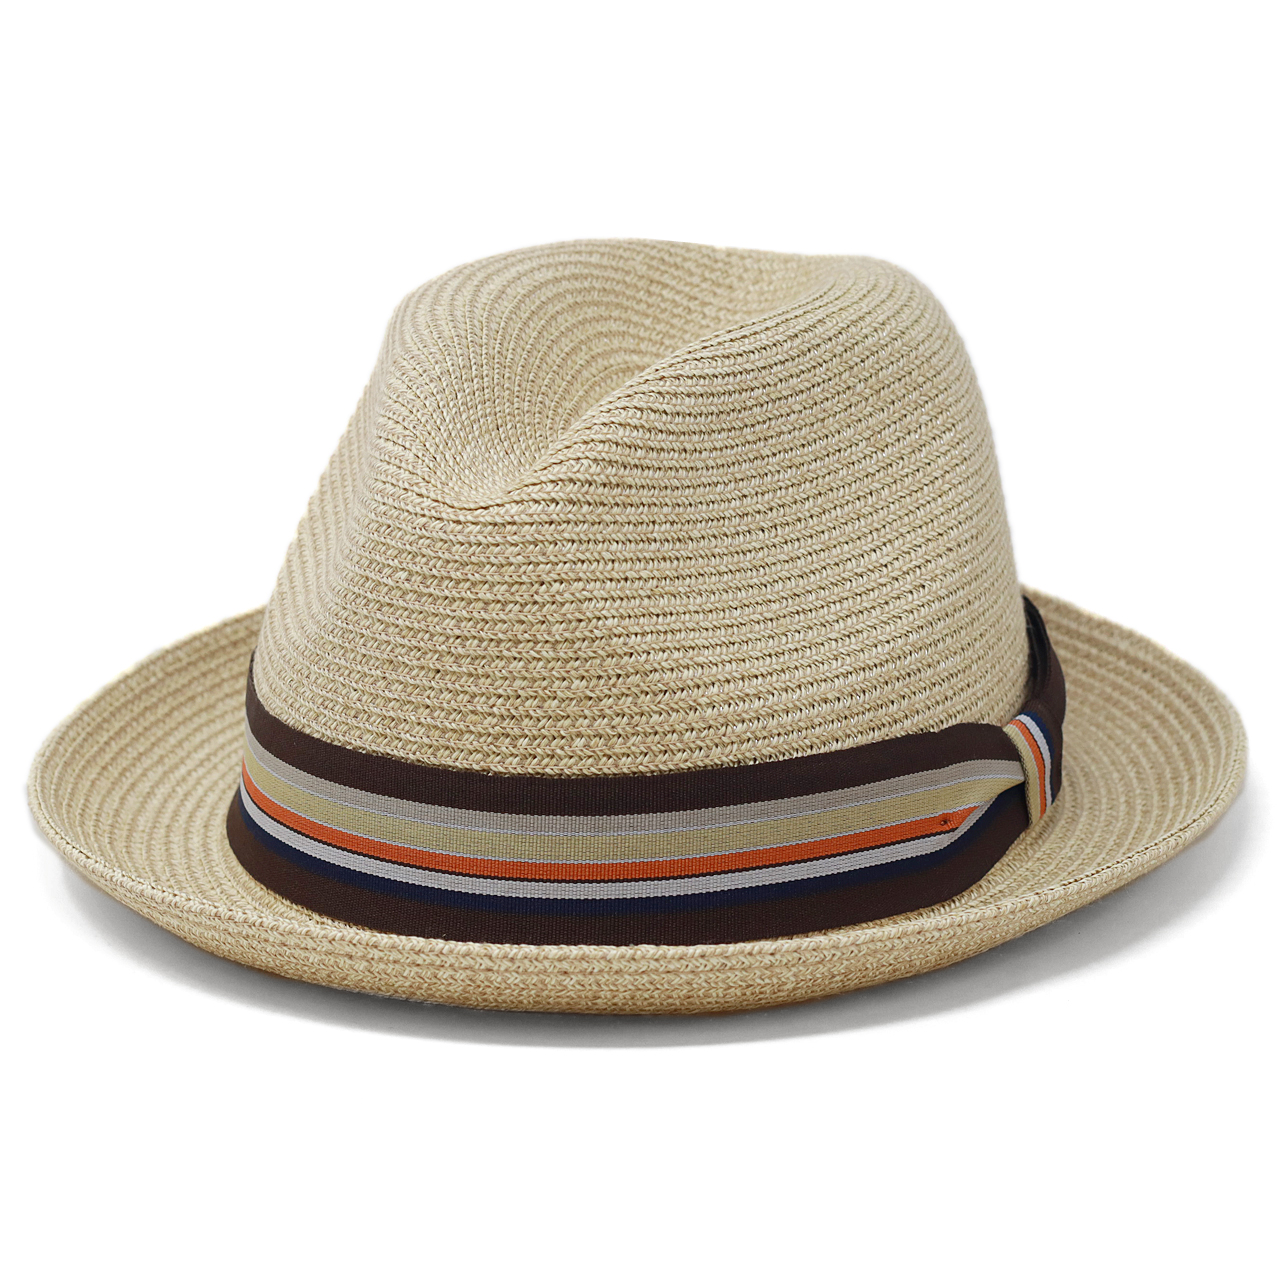 ブランド ハット Bailey ベイリー 帽子 夏の帽子 ストローハット 海外